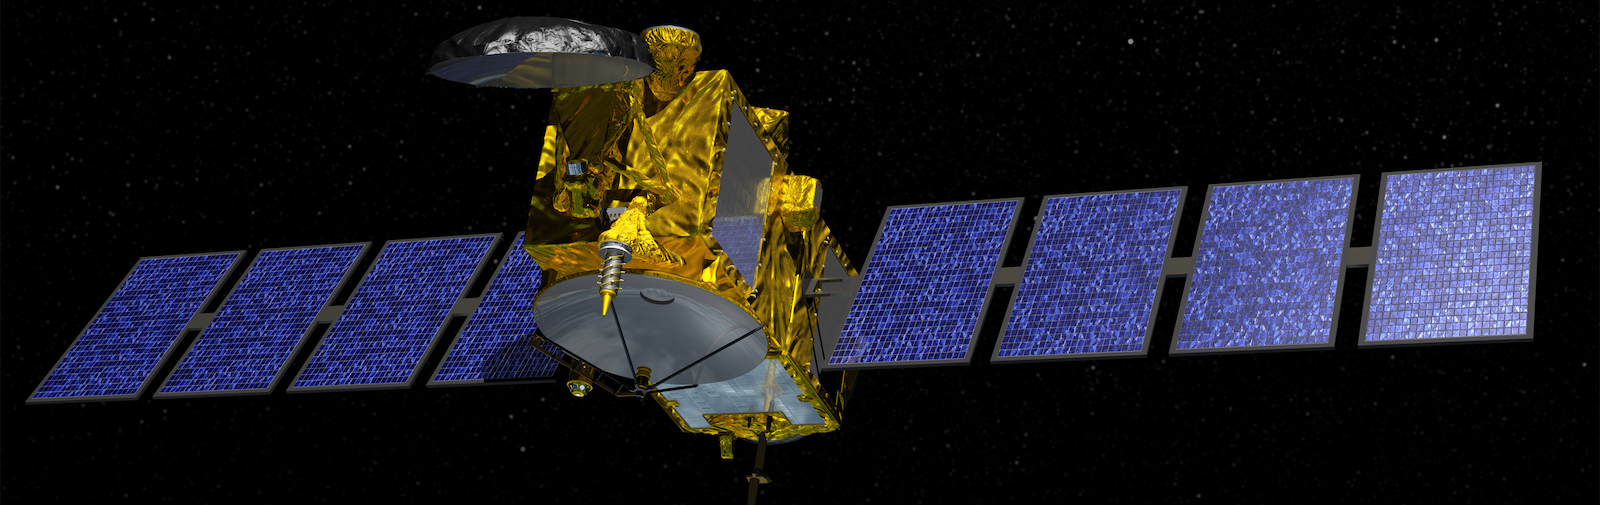 slide 2 - Artist's depiction of the Jason 3 Satellite.